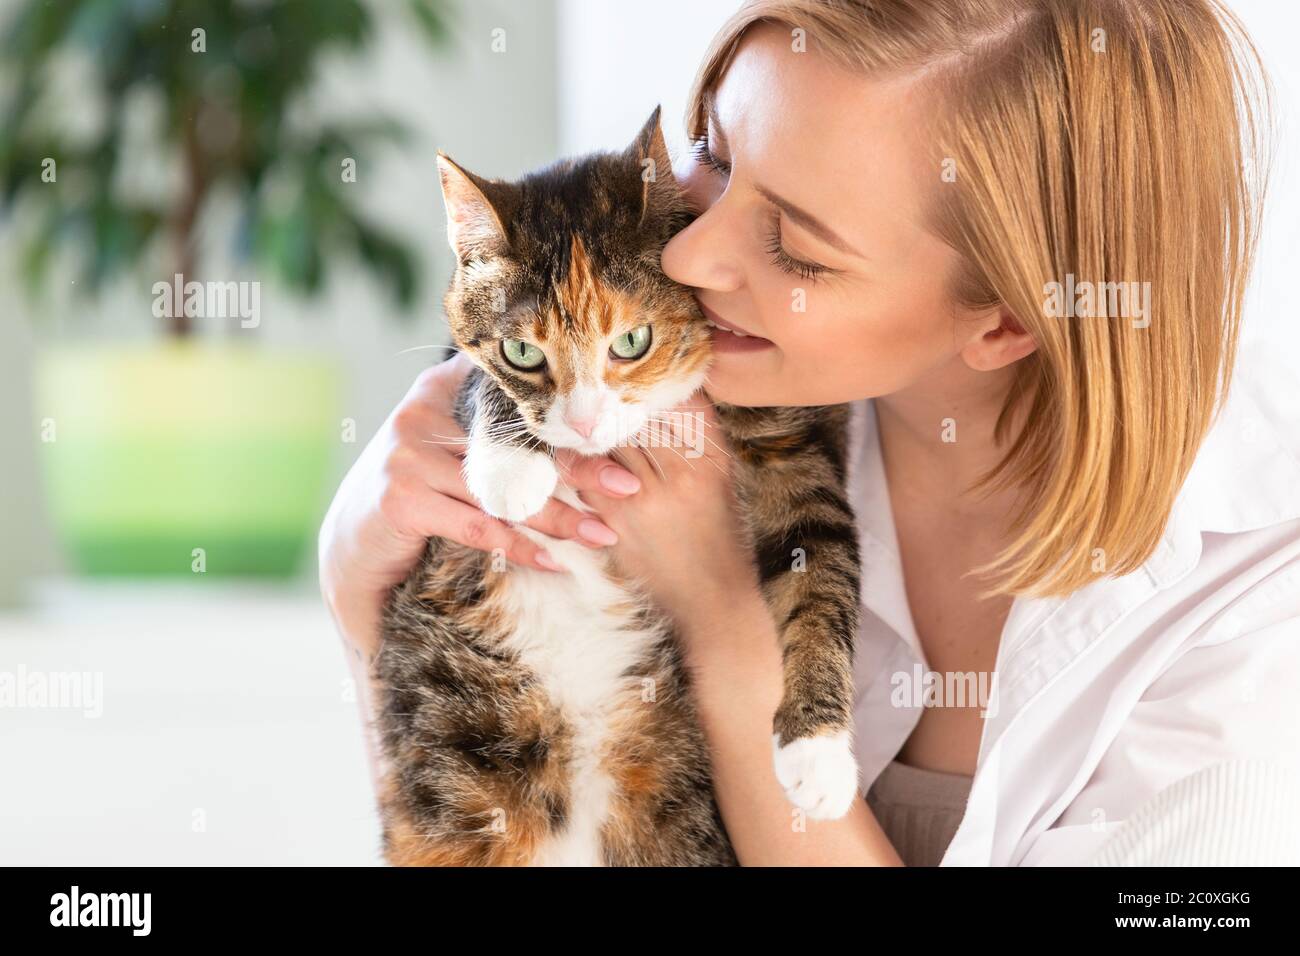 Primo piano di donna sorridente in camicia bianca baciando, abbracciando, abbracciando con tenerezza e amore gatto domestico in casa. Amore per gli animali, concetto di animali domestici Foto Stock